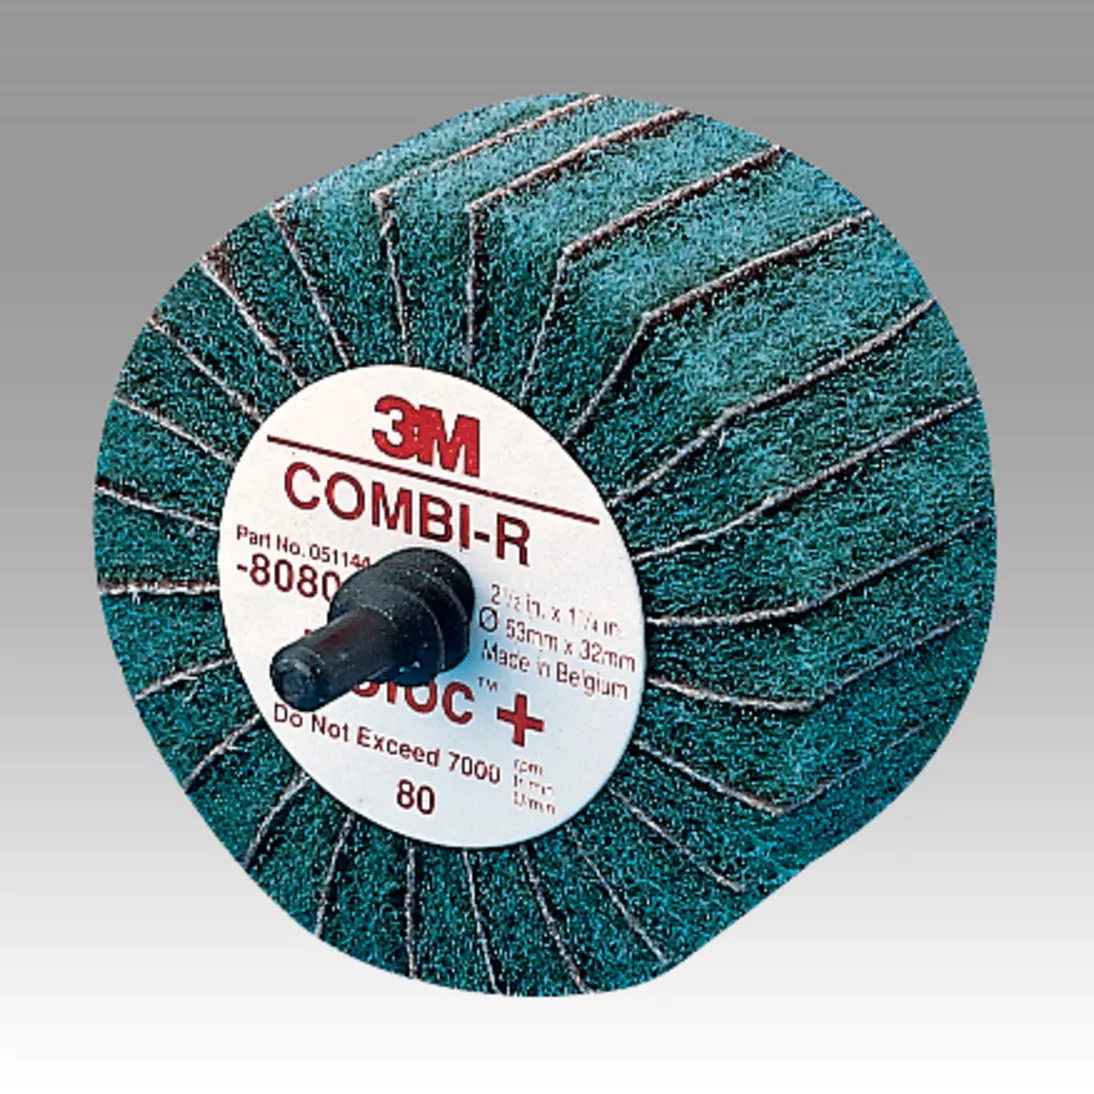 Scotch-Brite™ Roloc™+ Combi-R Wheel 80802, 2-1/2 in x 1-1/4 in 80
X-weight, 10 per case